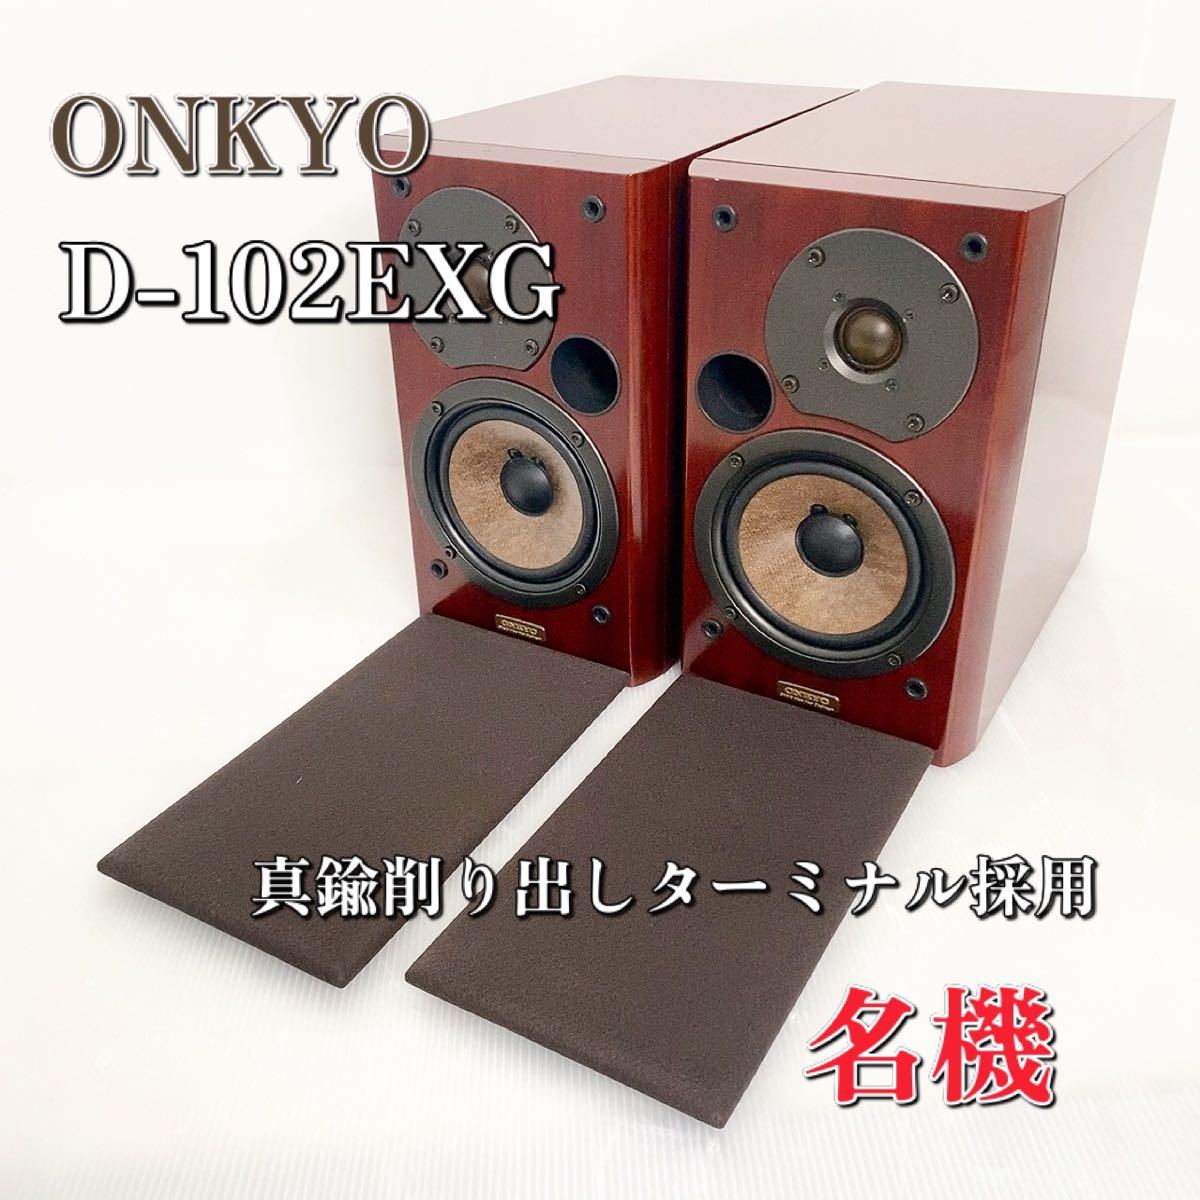 名機】ONKYO D-102EXG オンキョー スピーカーシステム 廃盤-